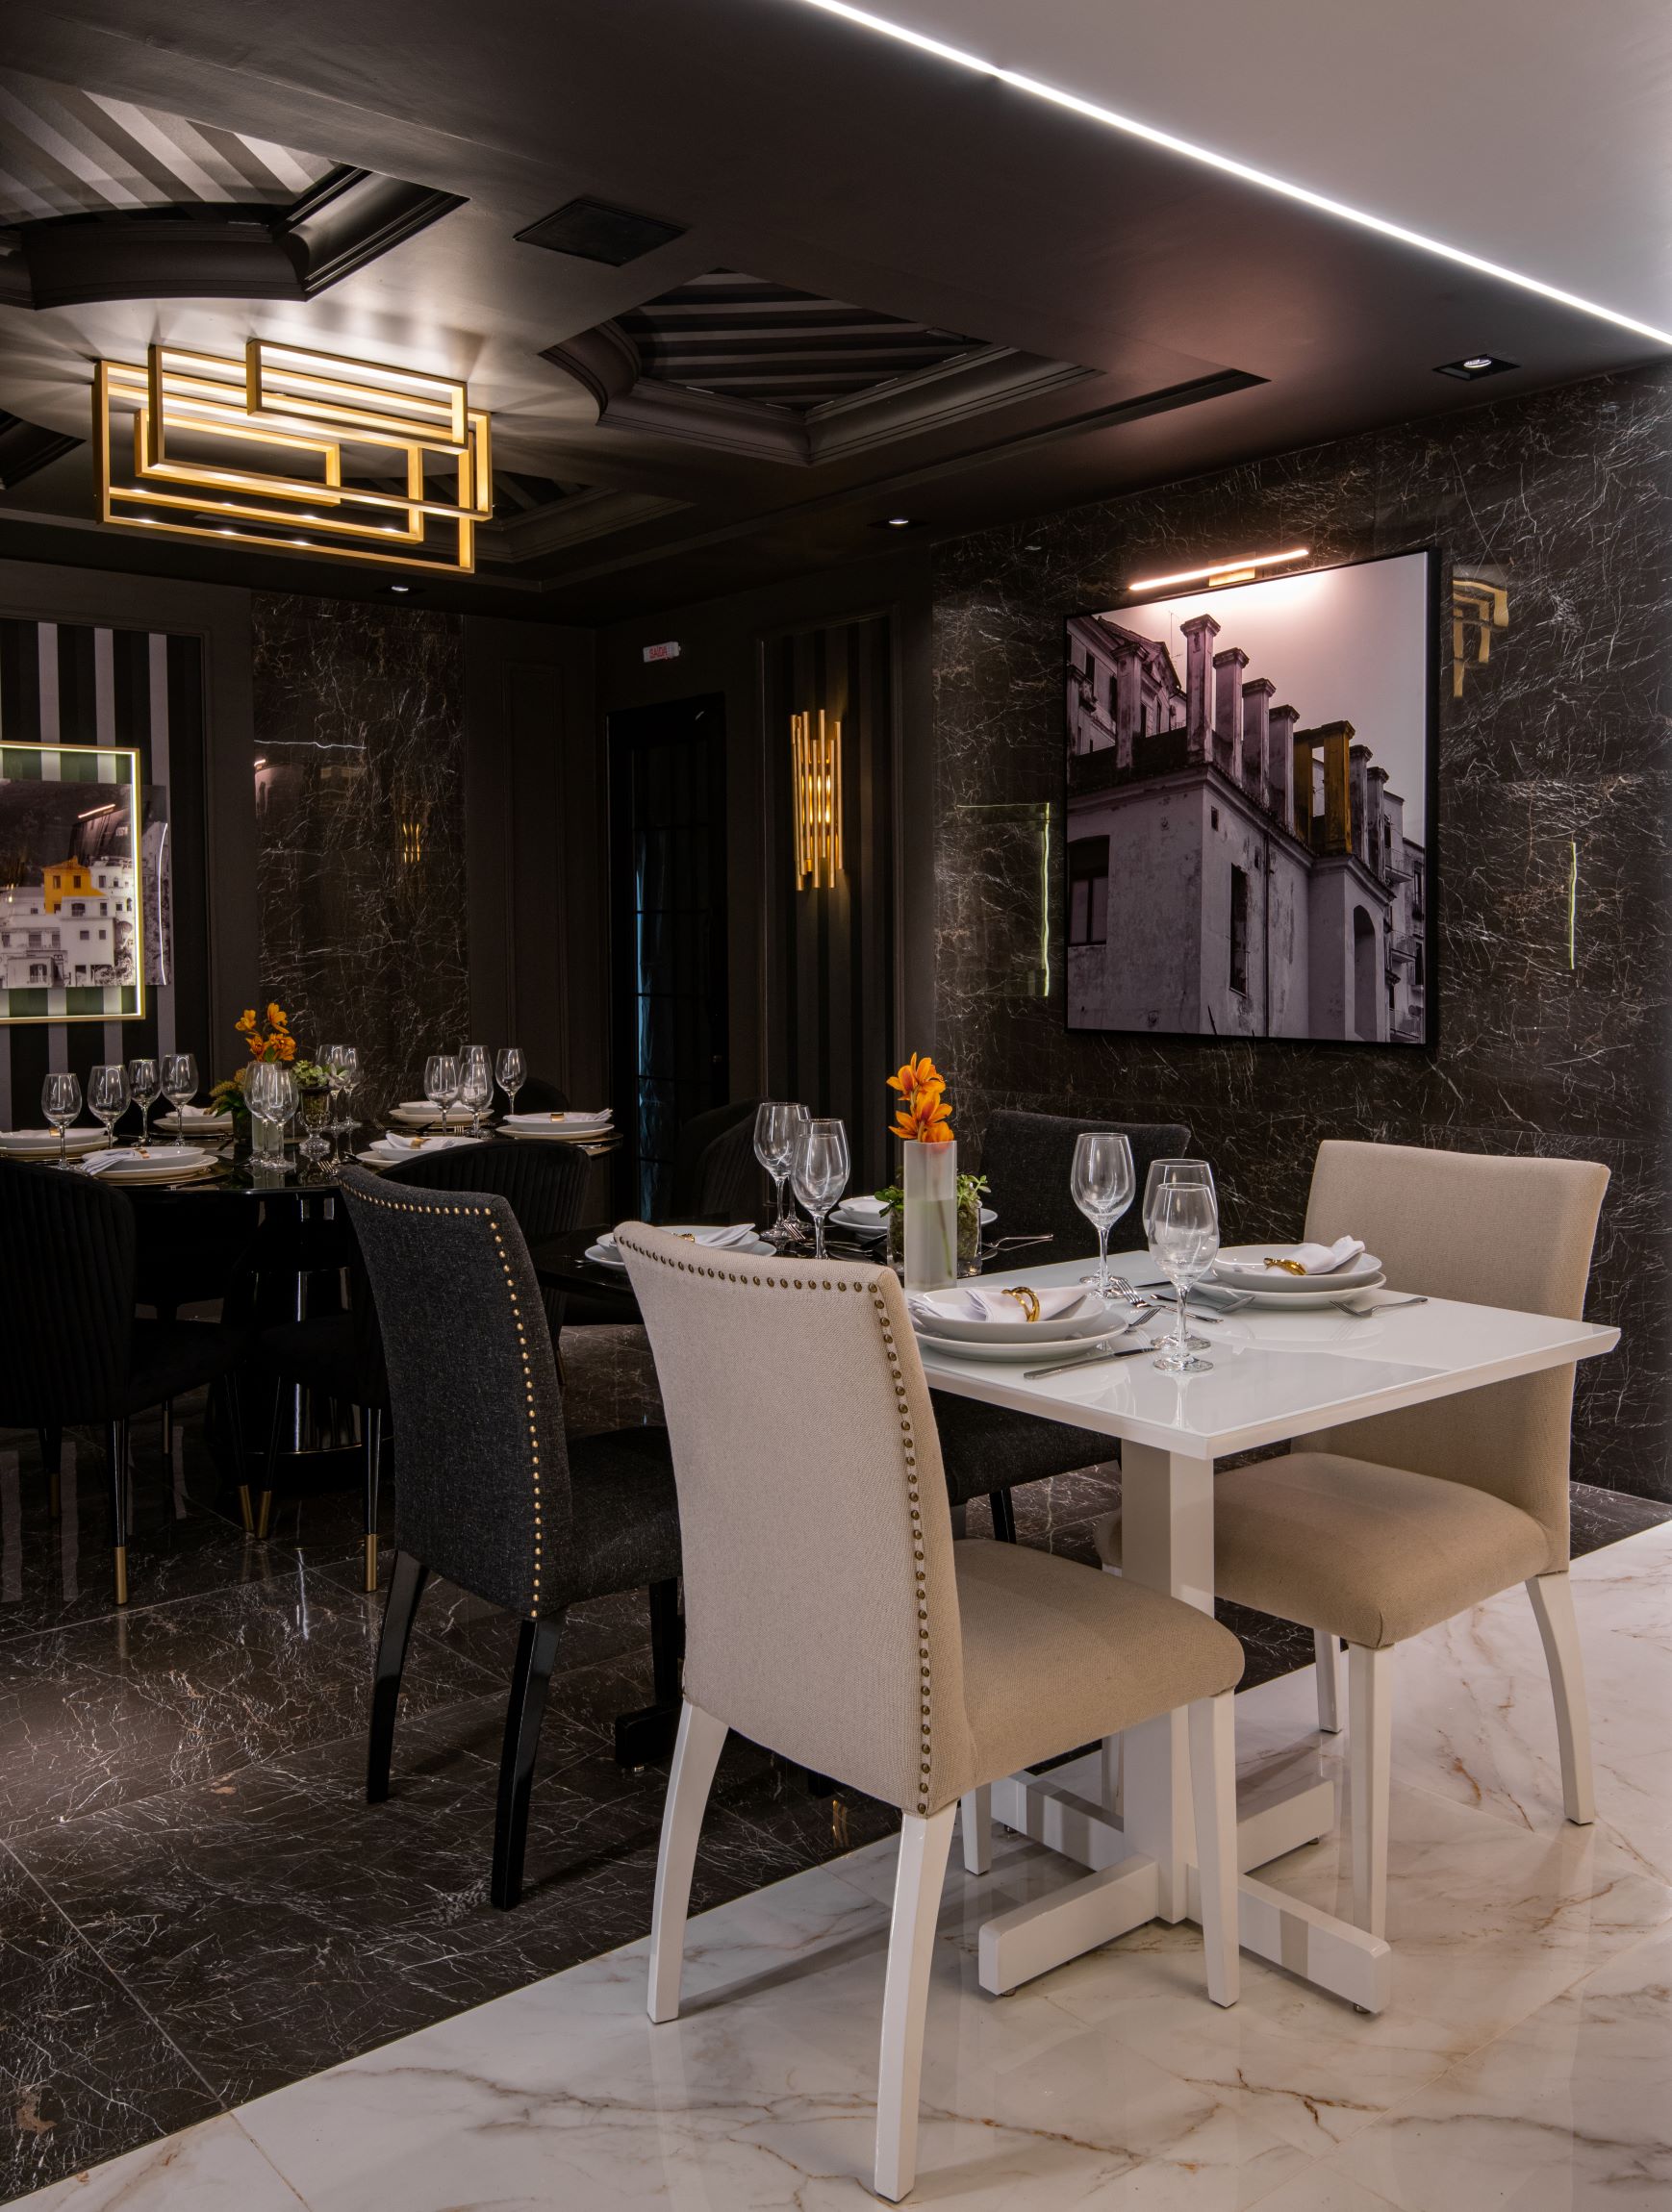 Restaurante Limone, CASACOR São Paulo 2019, Habitat Projetos Inteligentes. Restaurante com conceito de dualidade, mesas de mármore branco e preto, cadeiras clássicas brancas e pretas, quadros e teto de gesso.